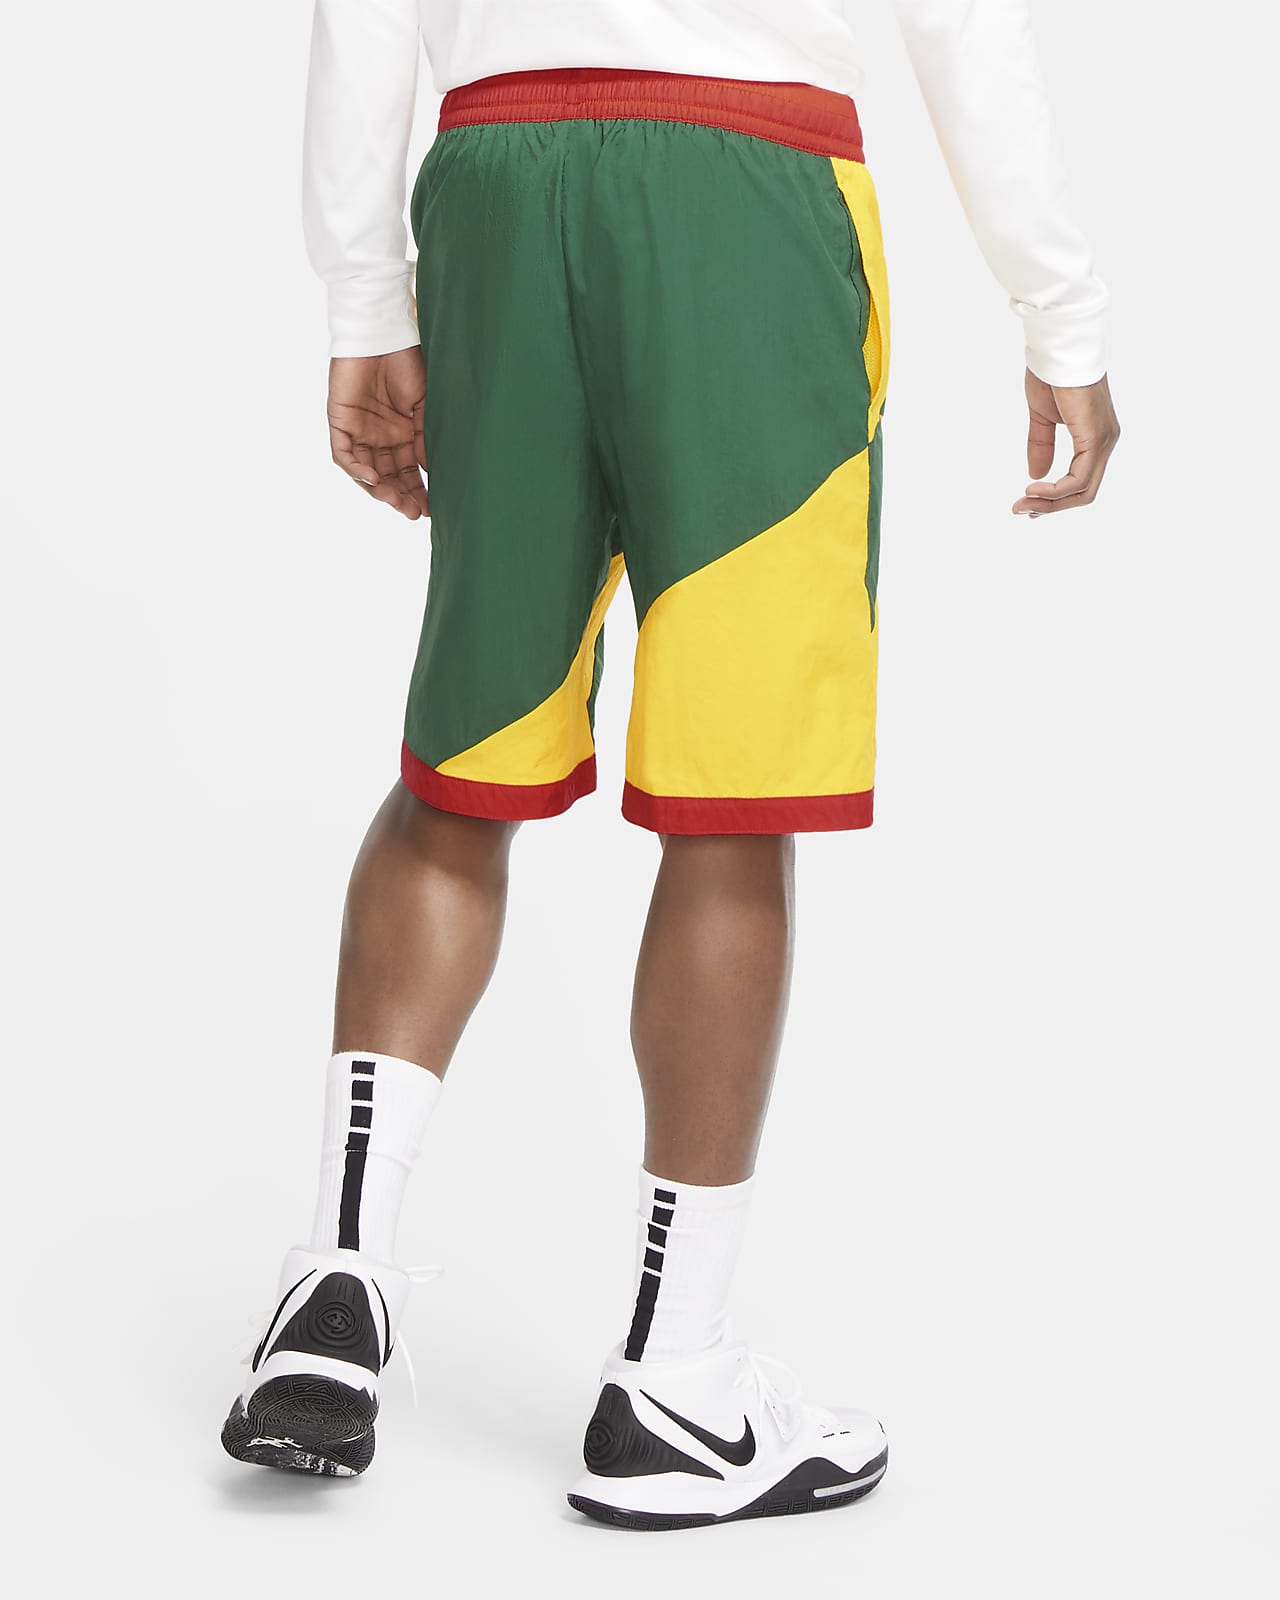 custom nike basketball shorts